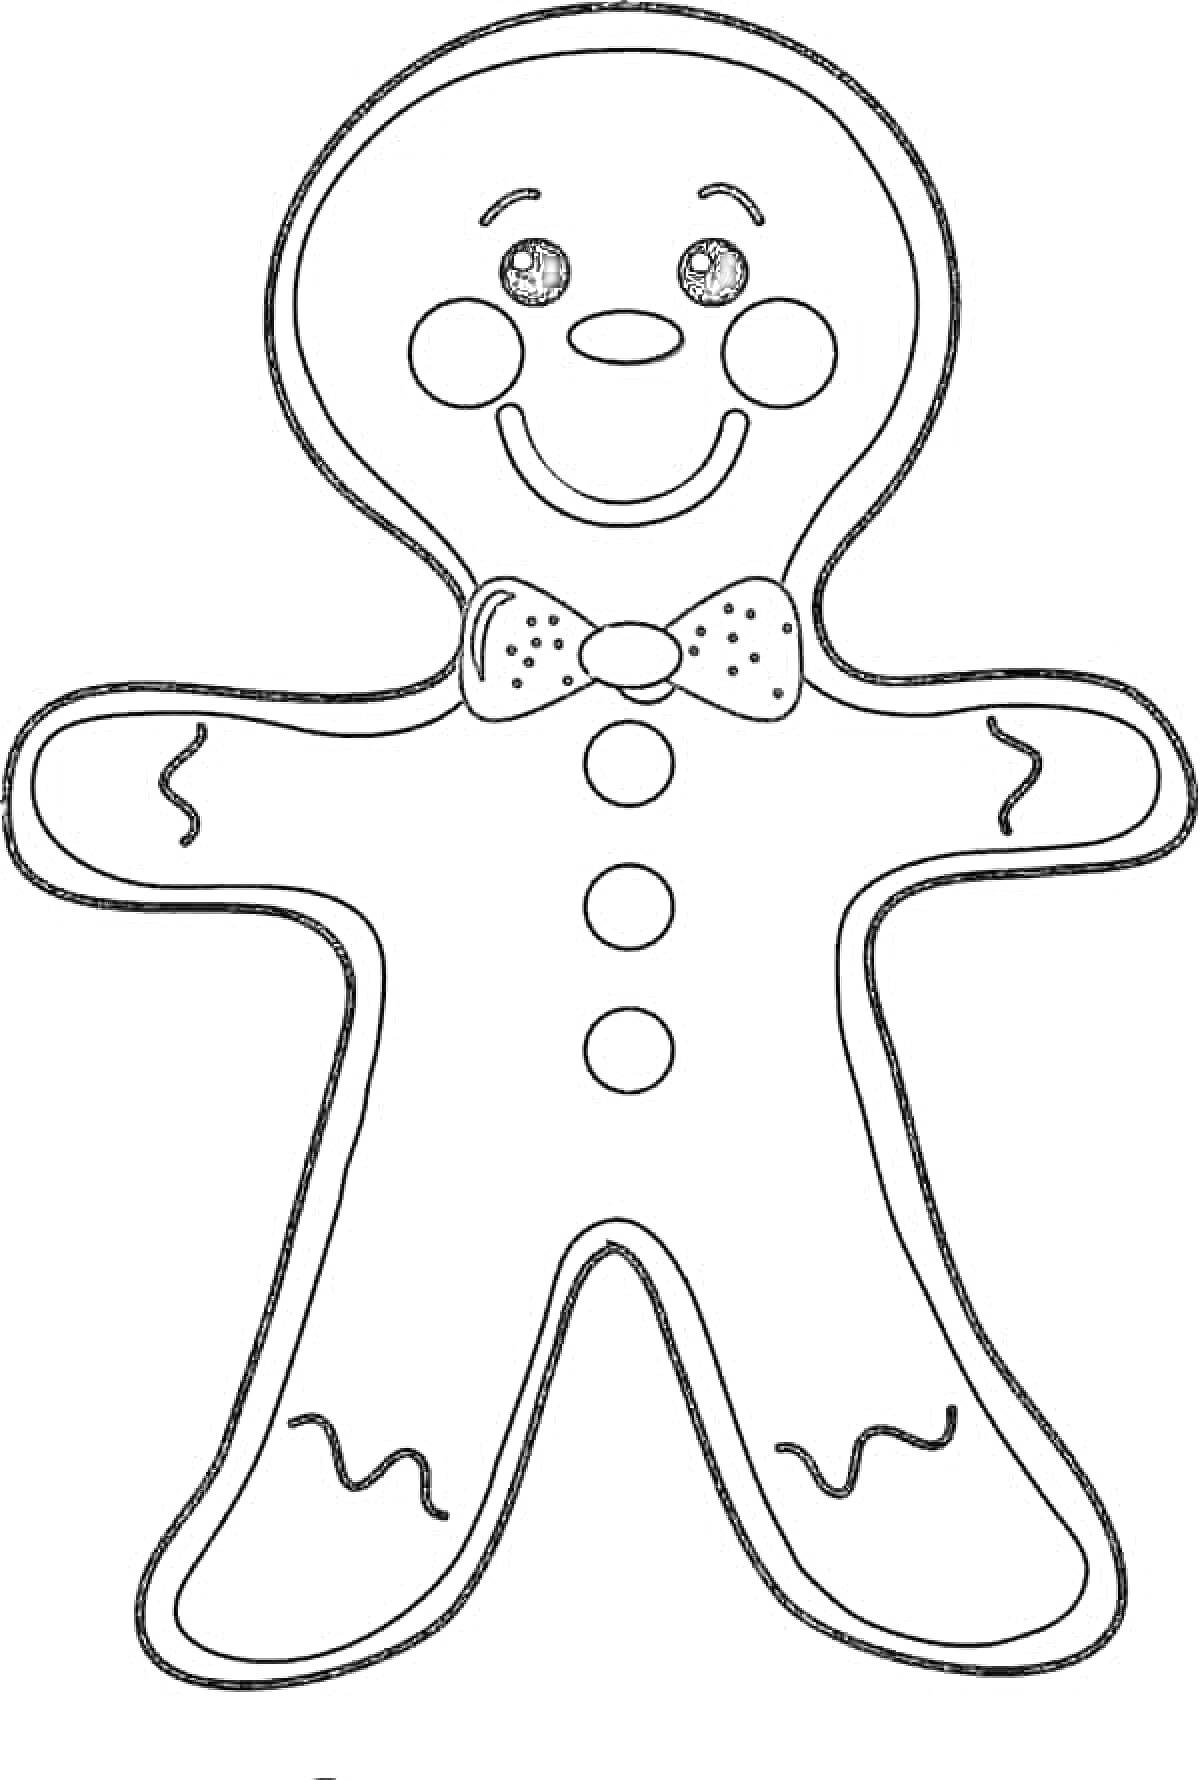 Раскраска Пряничный человечек с галстуком-бабочкой, тремя пуговицами и улыбающимся лицом